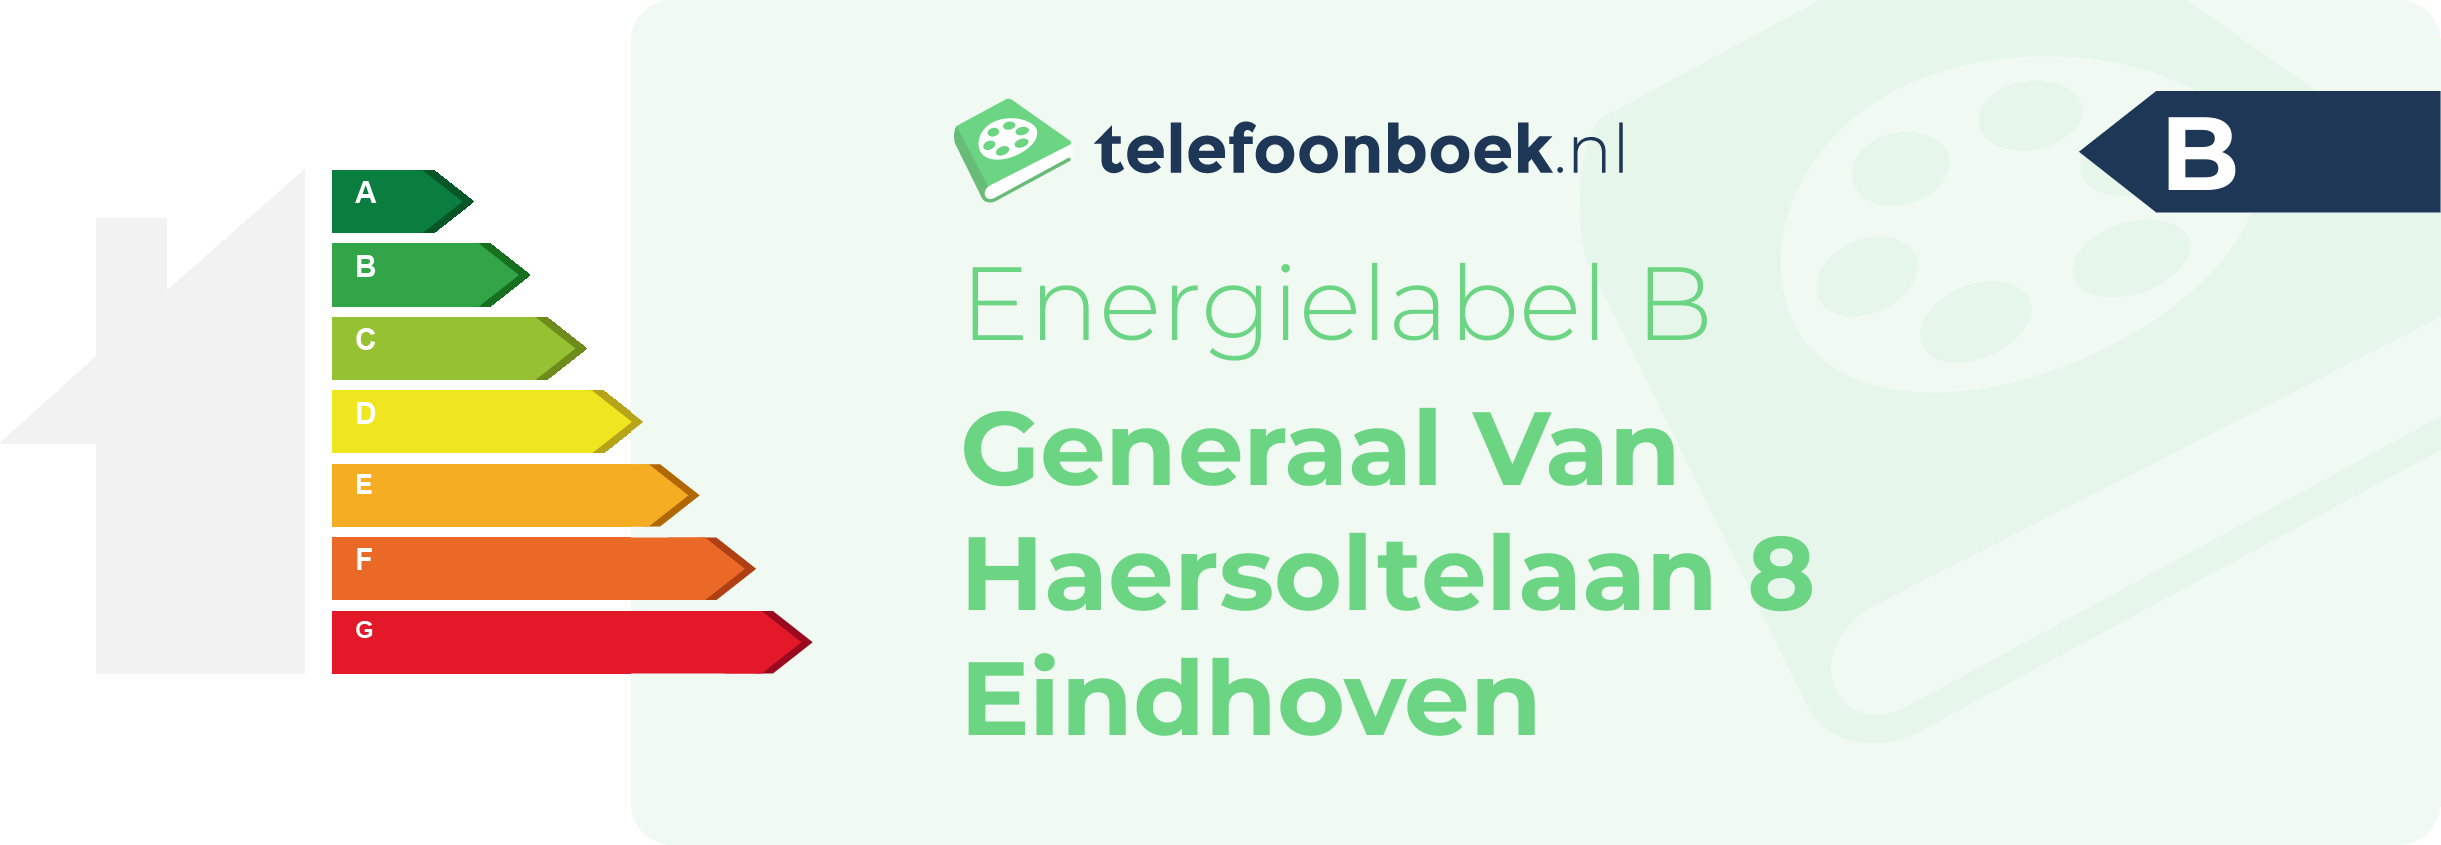 Energielabel Generaal Van Haersoltelaan 8 Eindhoven